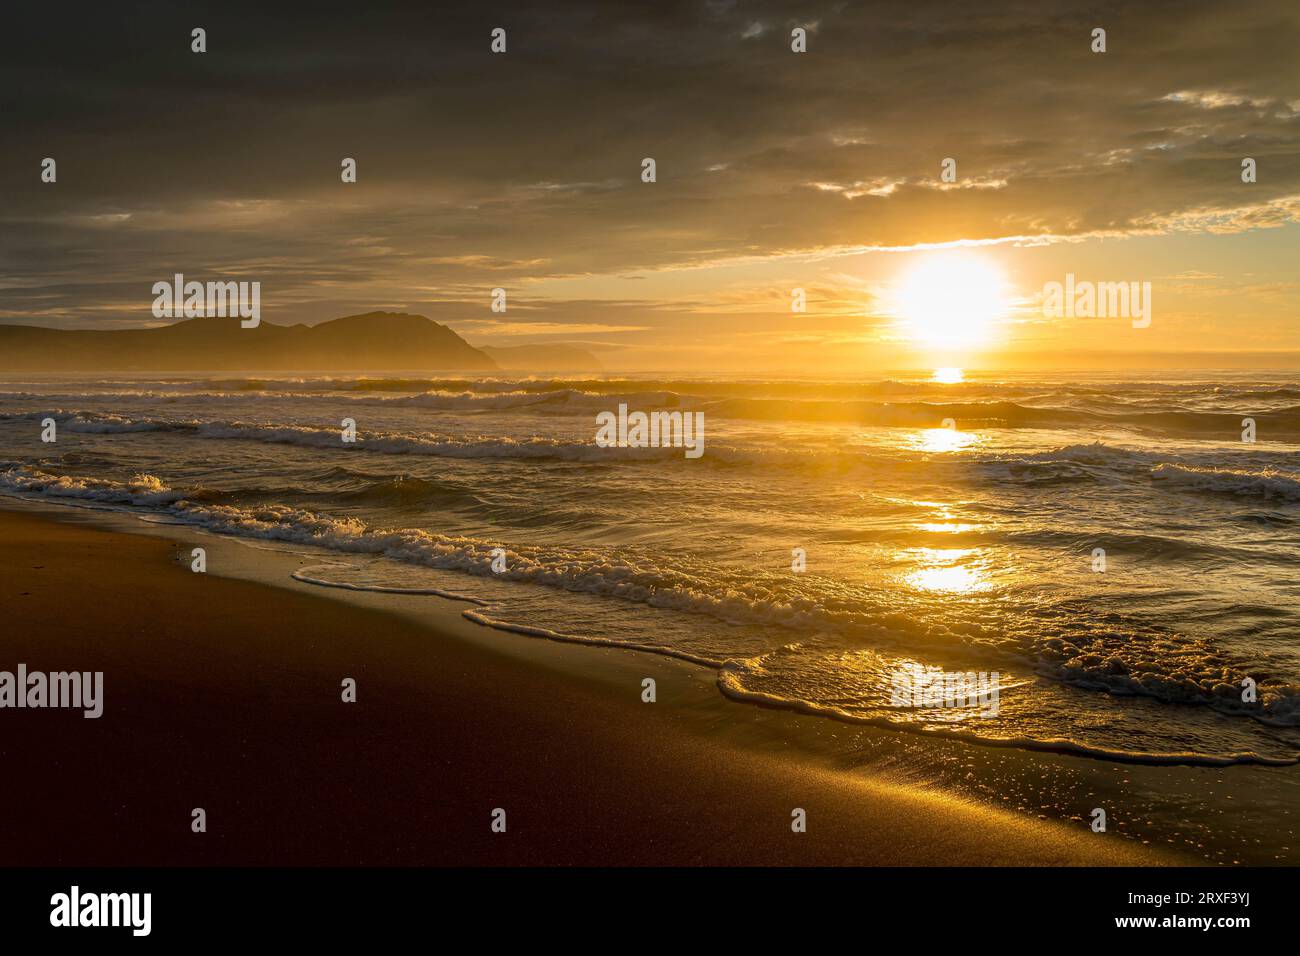 La plage de sable au bord de la mer du Japon pendant le beau lever de soleil coloré dans la région de Primorsky dans l'extrême-Orient russe. Banque D'Images